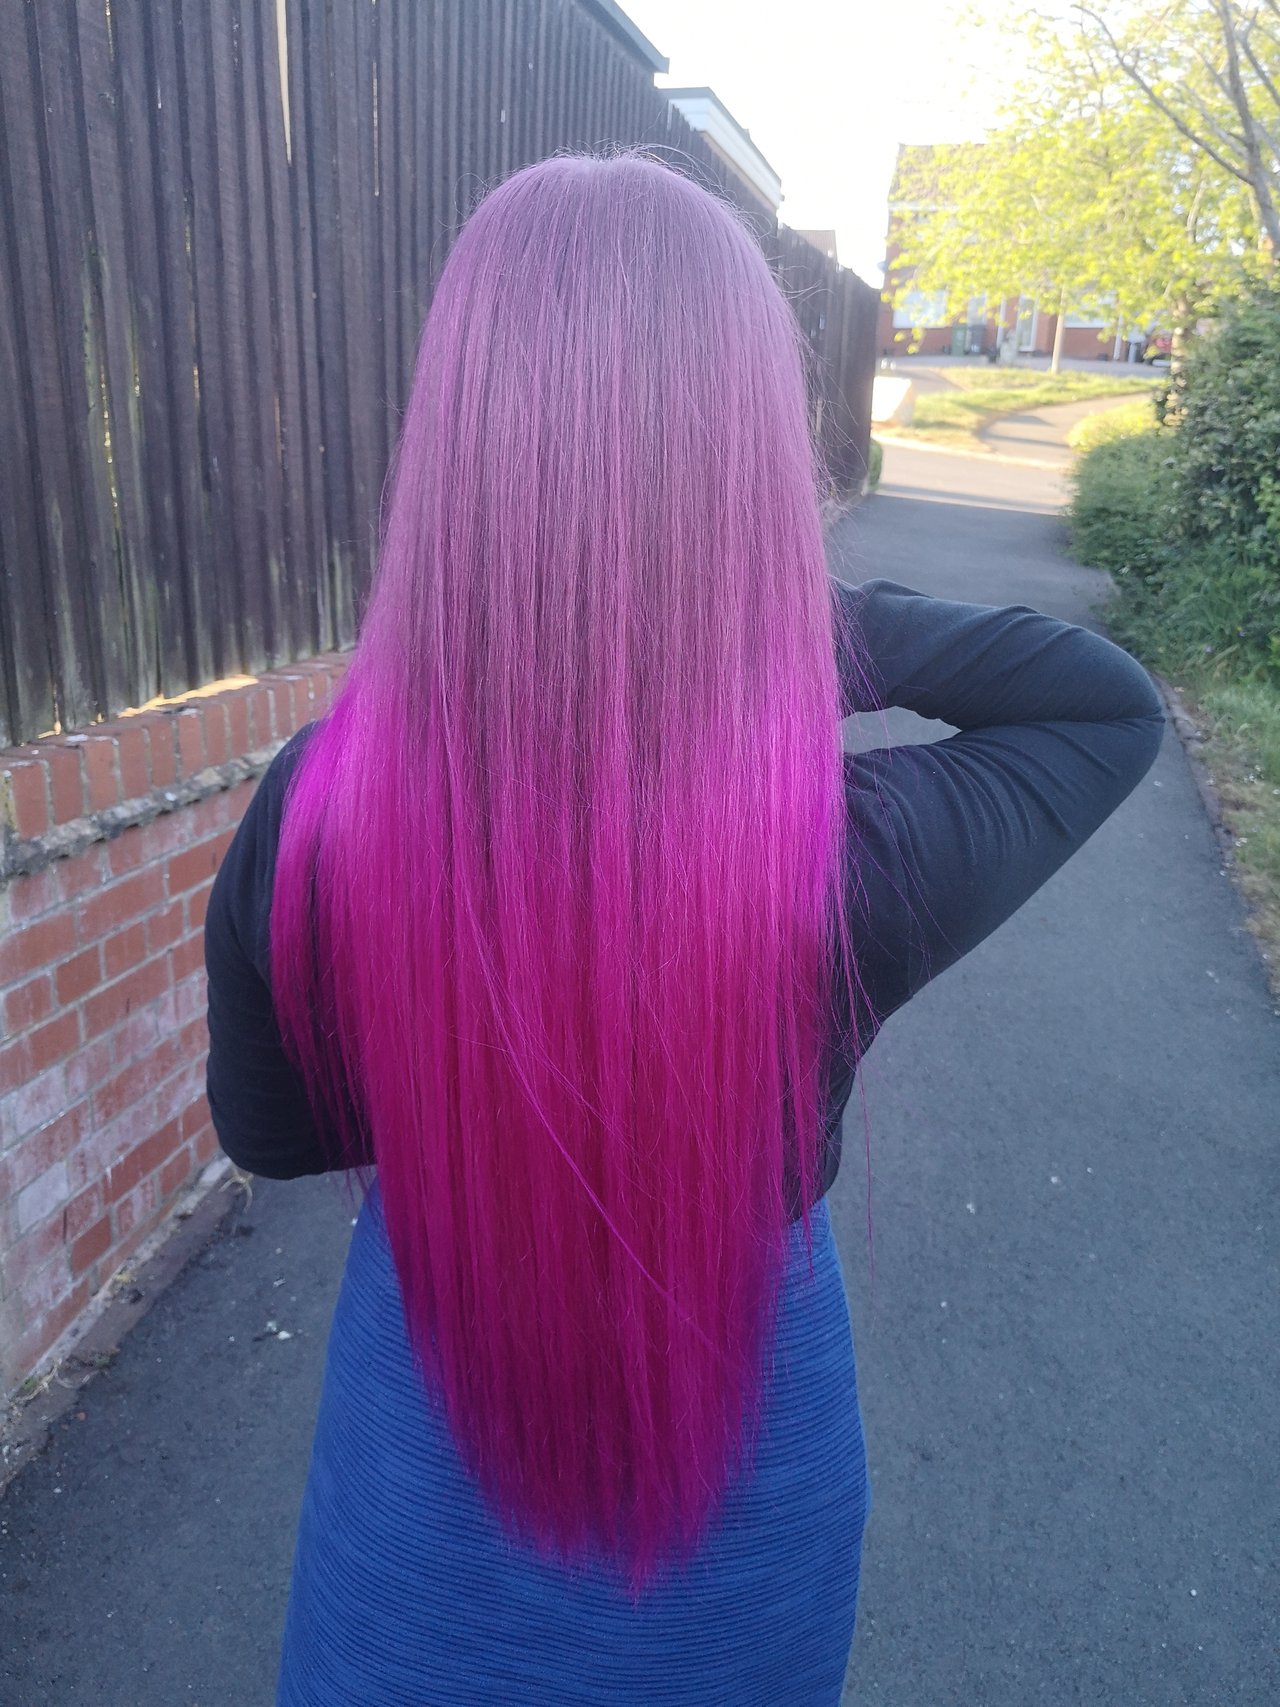 Pink hair, don't care... Či ako sa to vraví? Aj keď je to skôr magenta 